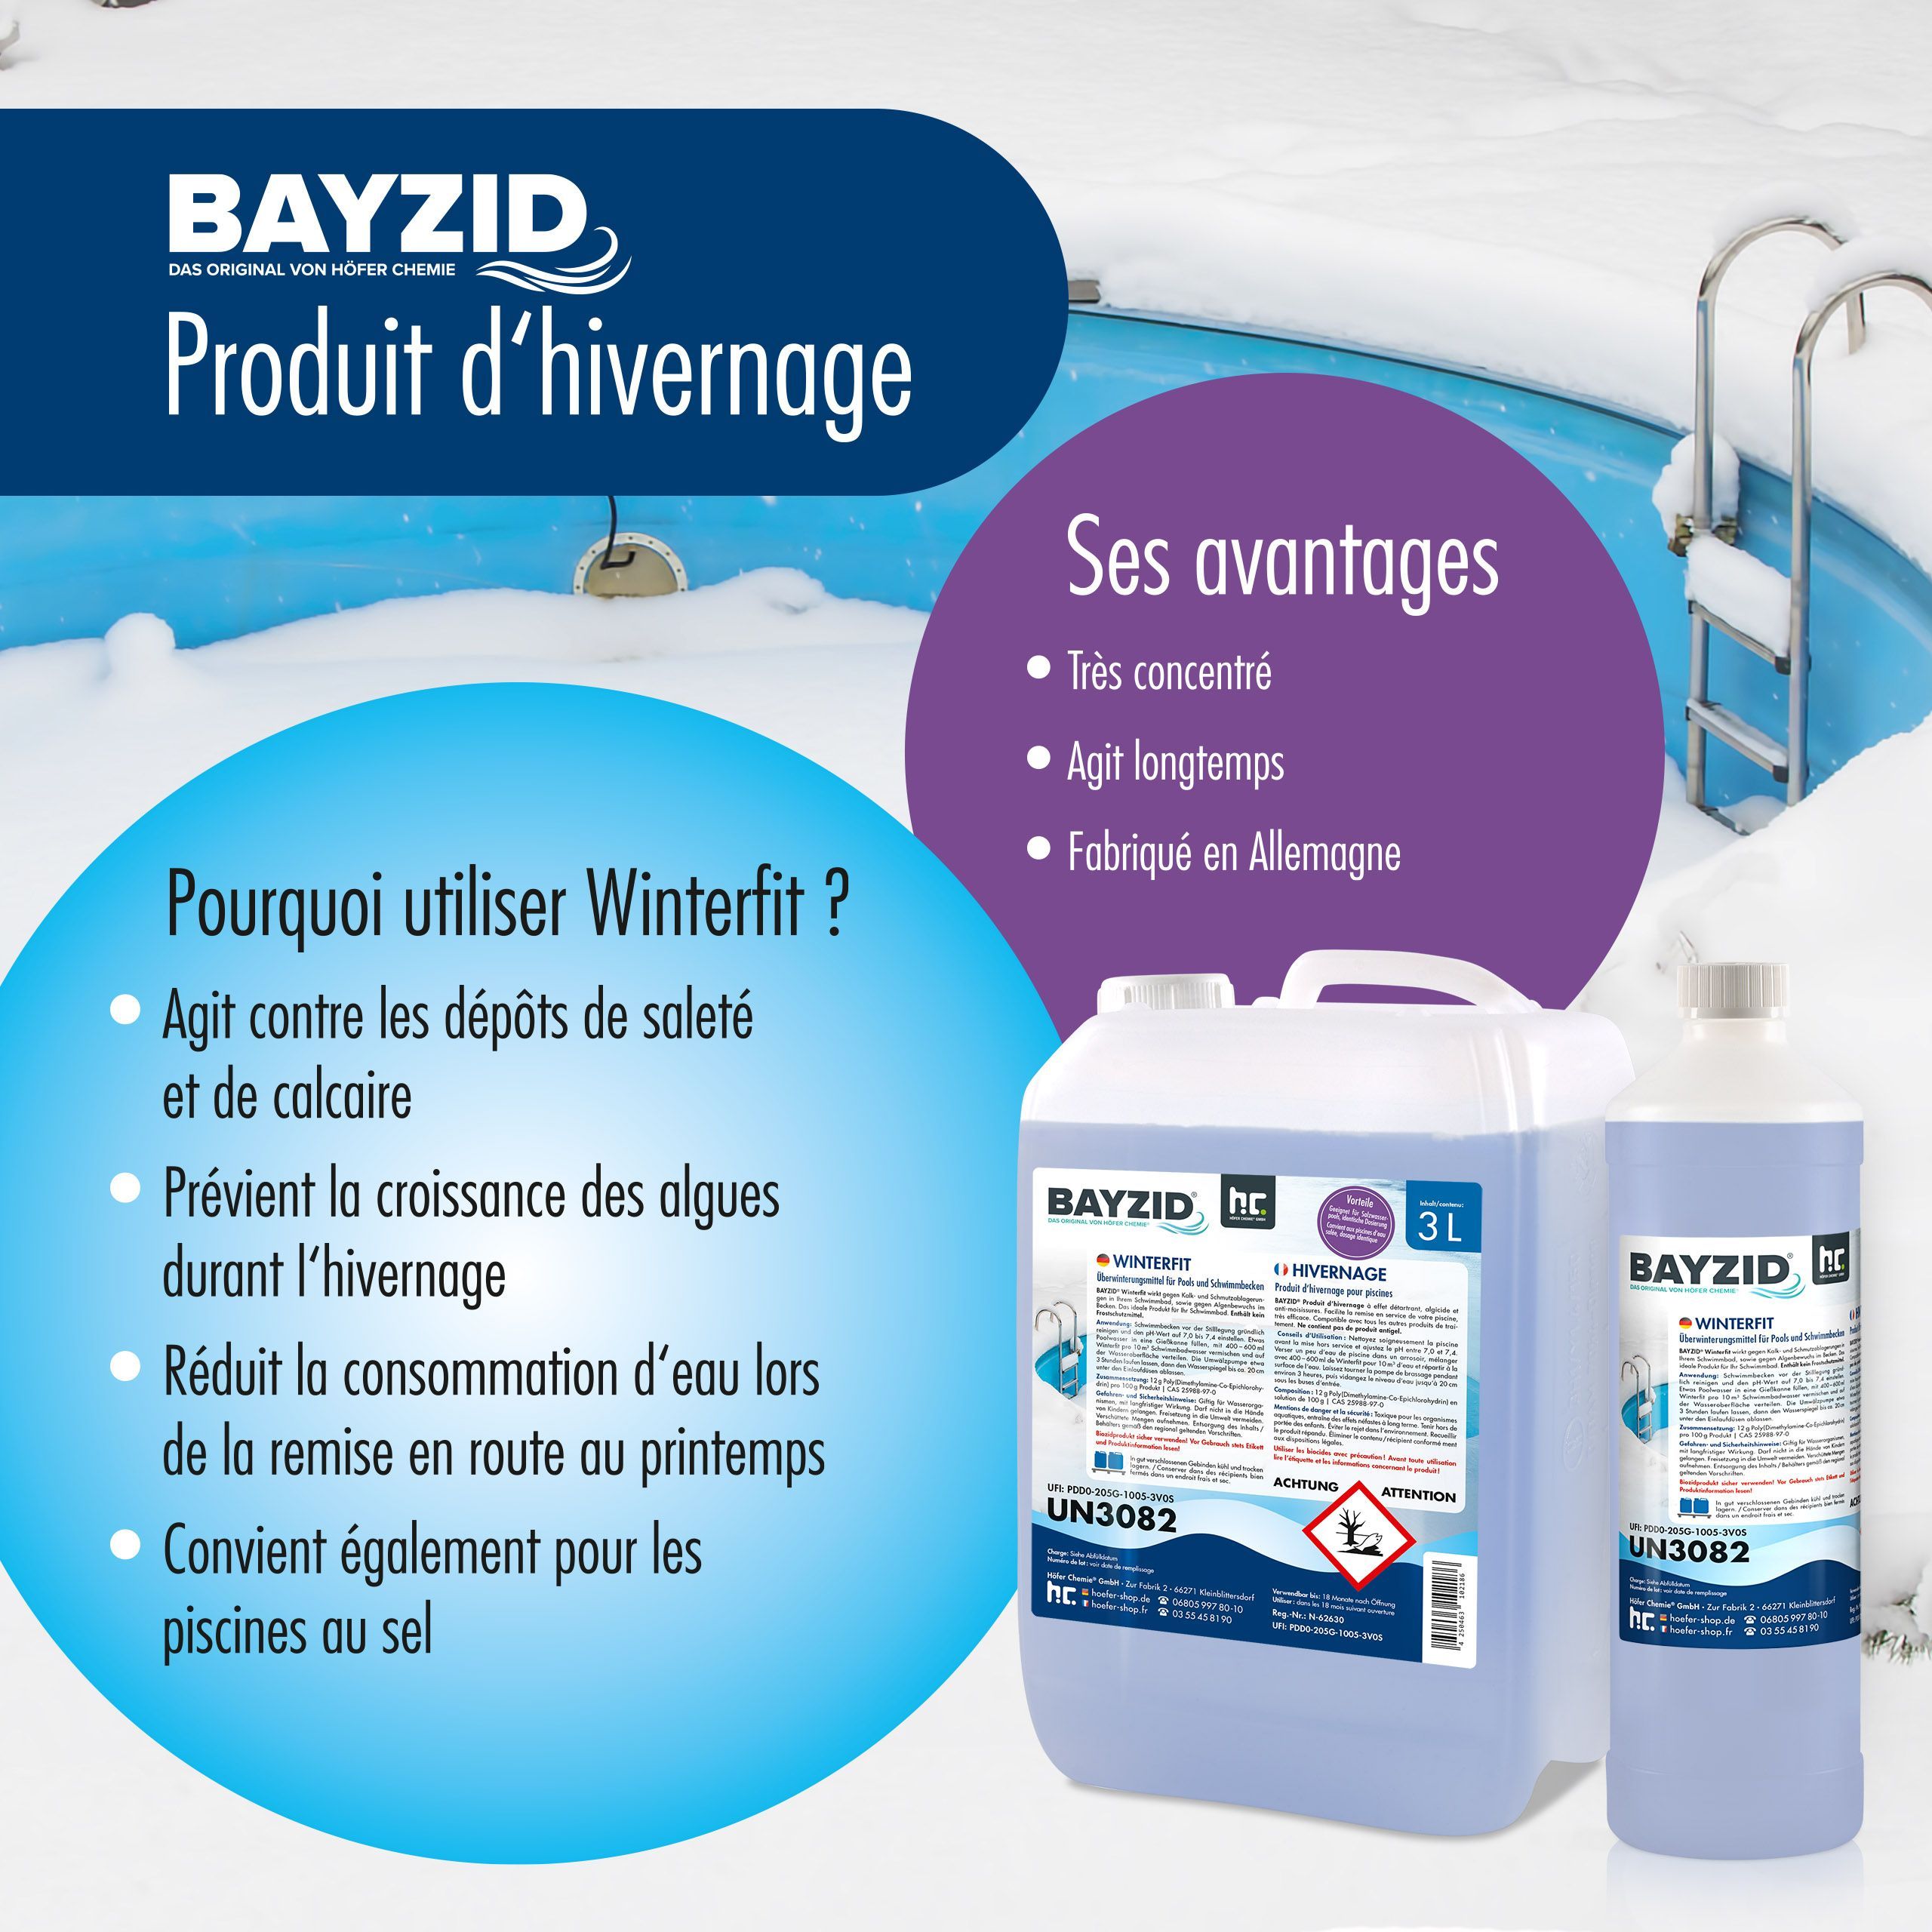 1 L BAYZID® Winterfit Überwinterungsmittel für Pools